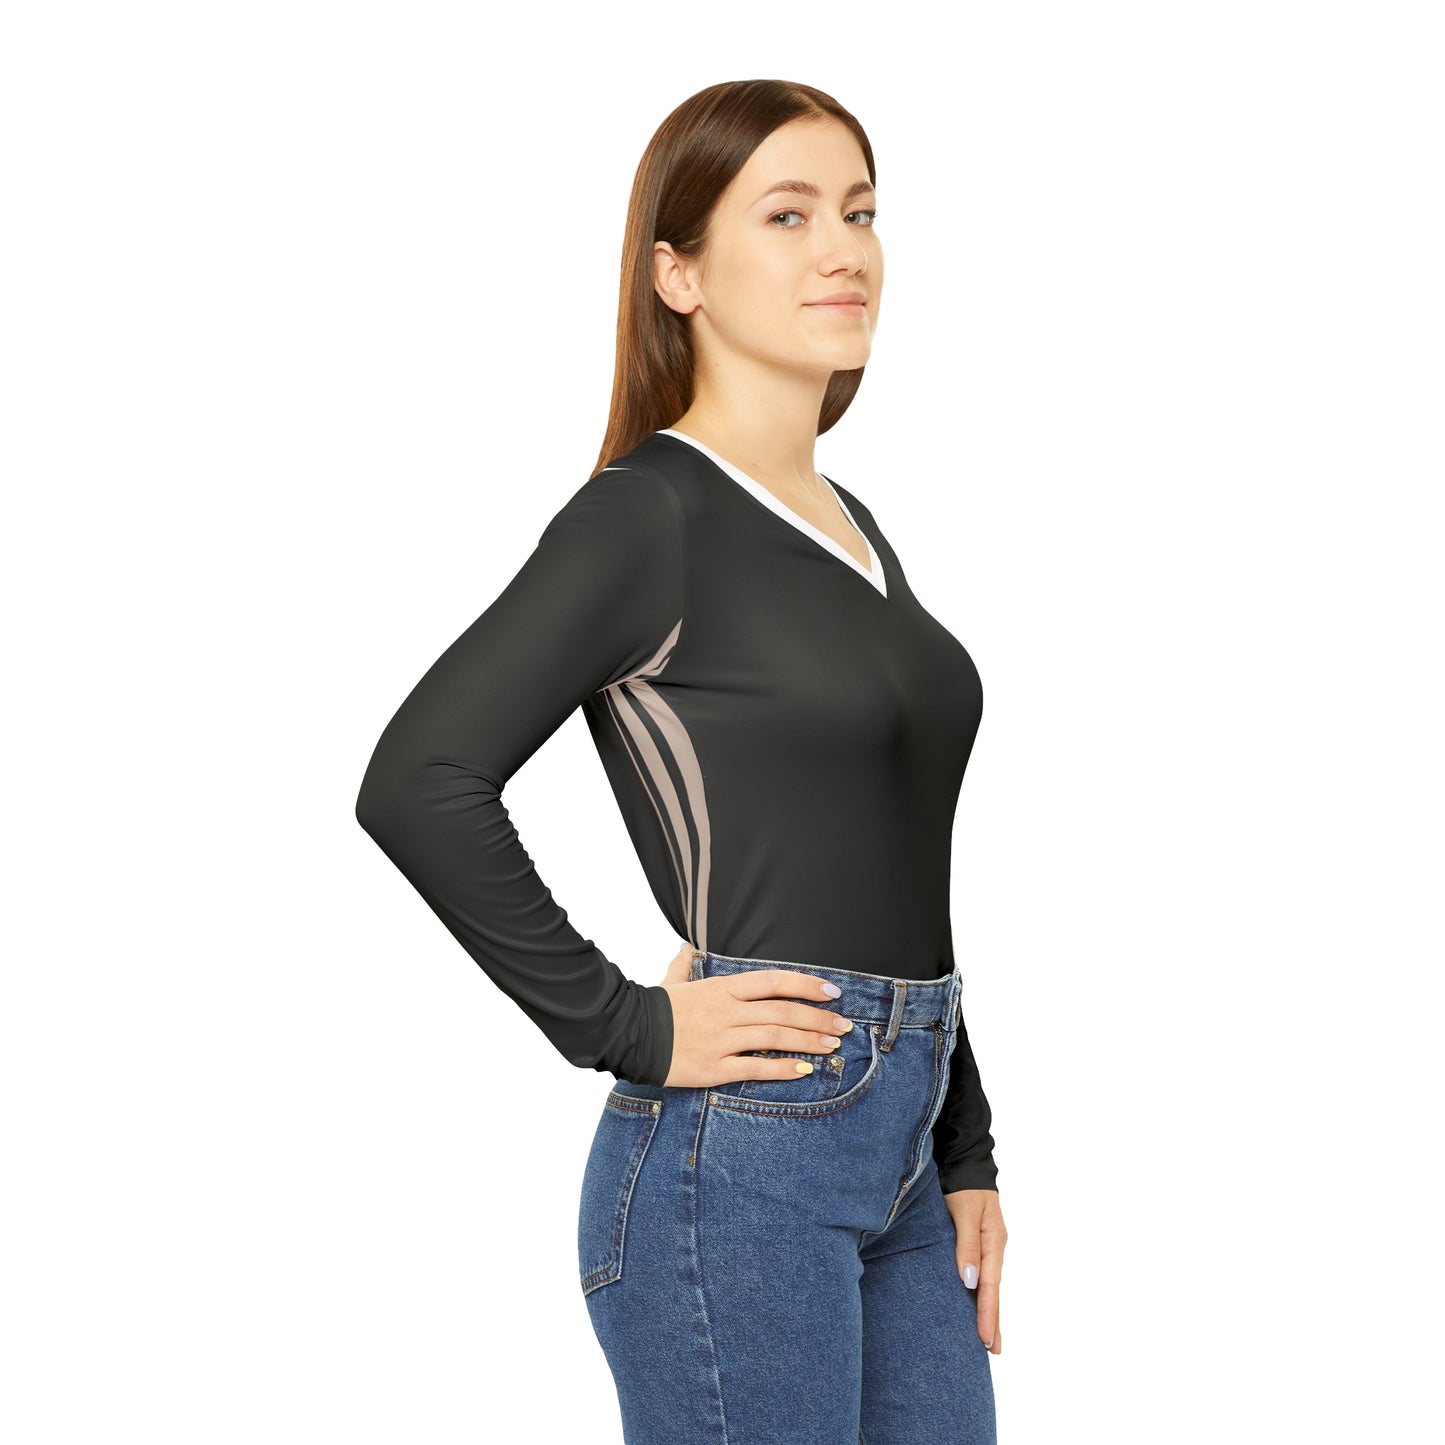 Lino Miles - Women's Long-Sleeve V-neck Shirt